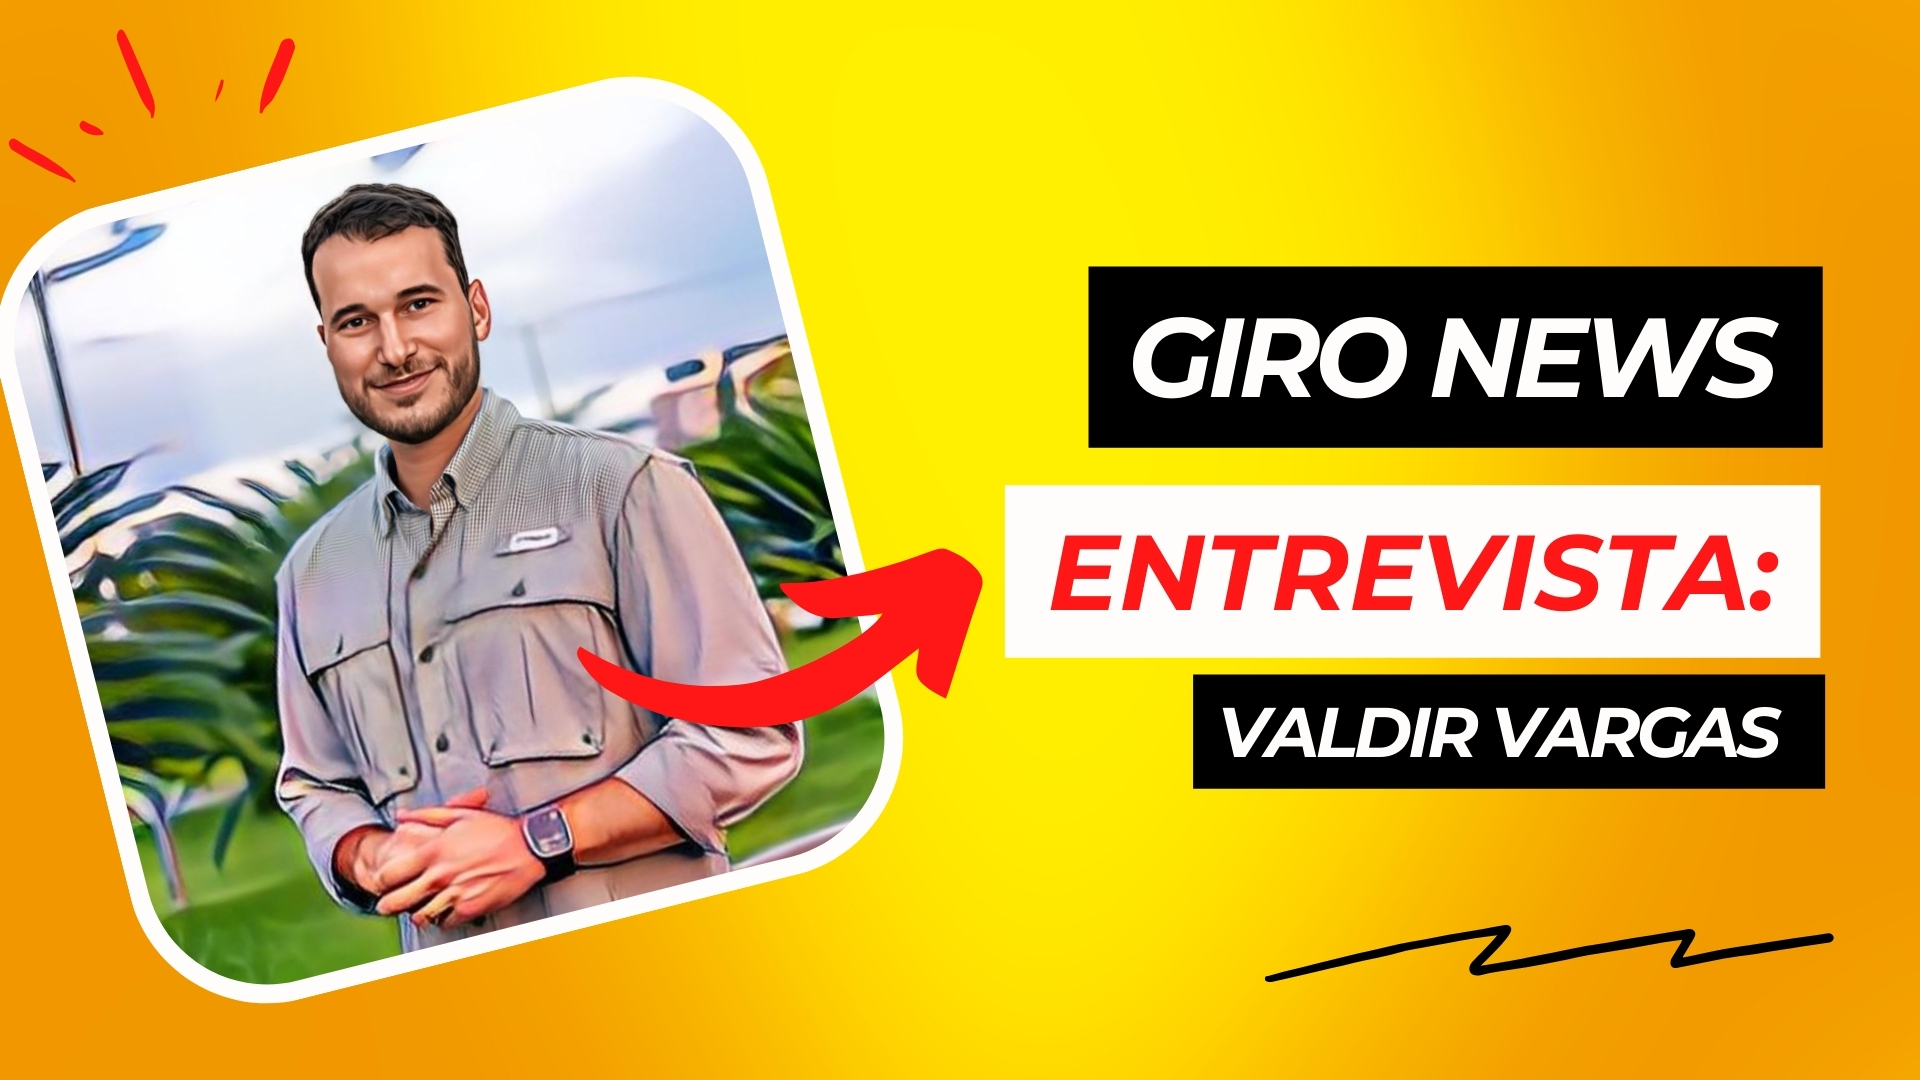 Programa Giro News entrevista: Valdir Vargas